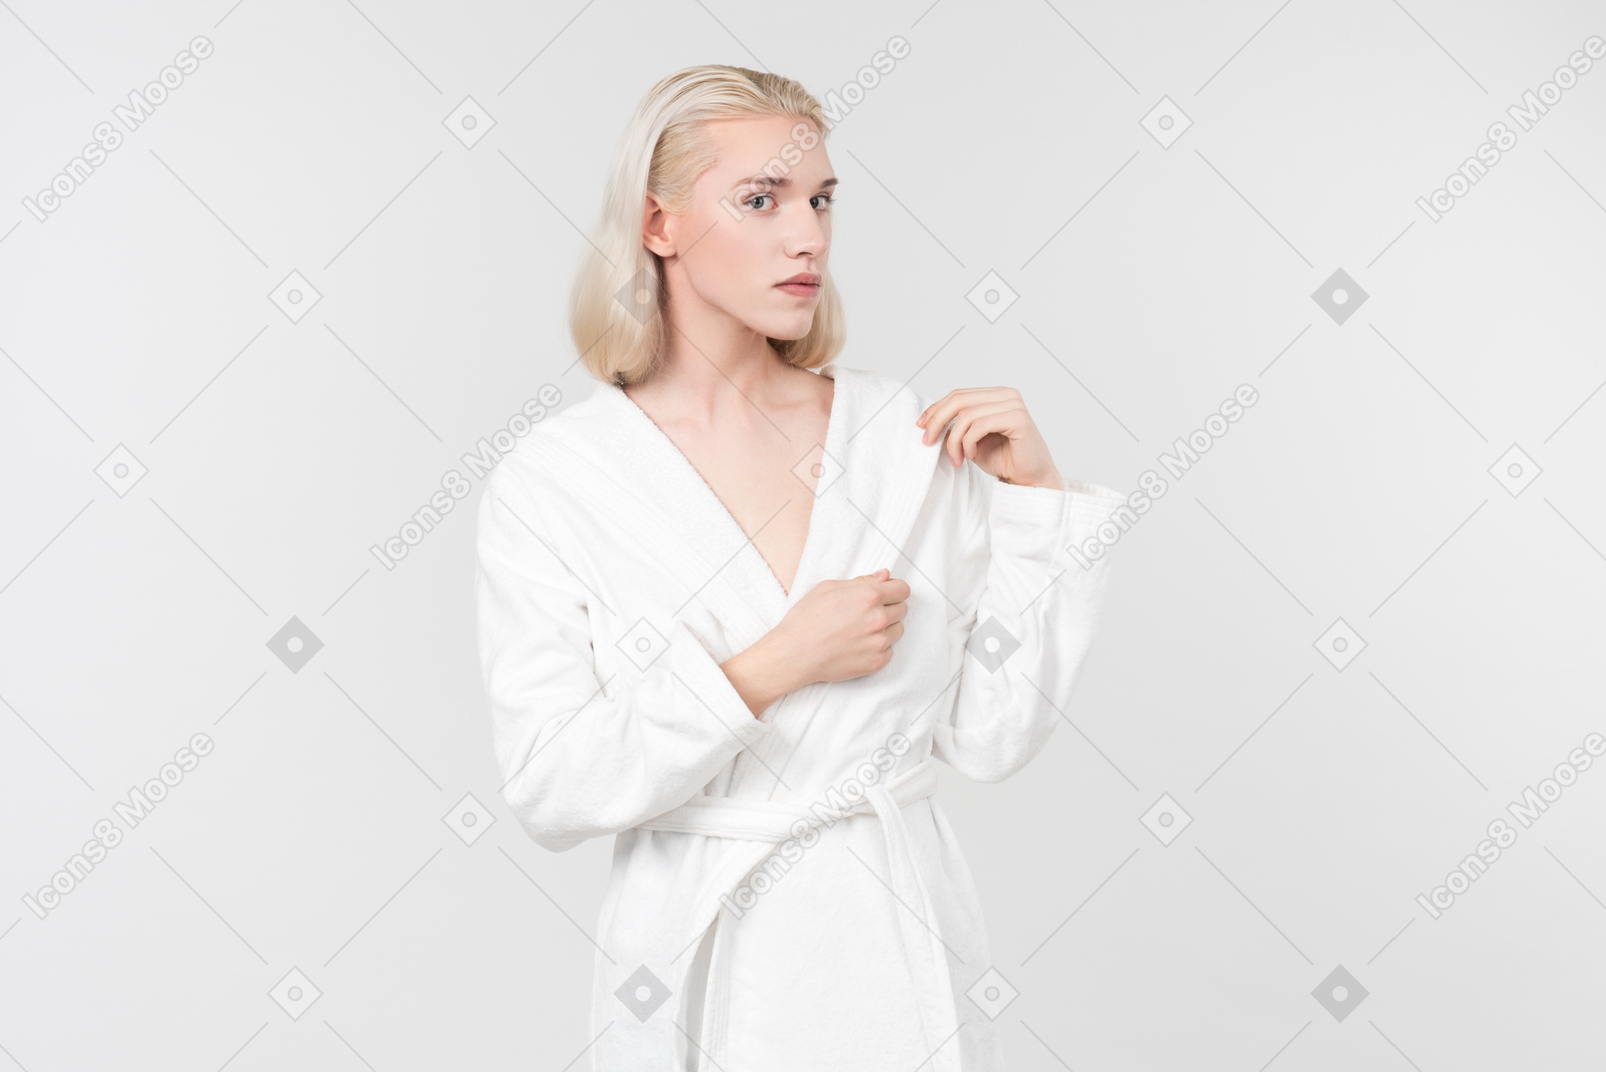 Wenn ich einen weißen bademantel befleckt habe, der fleck aber auch weiß ist, soll ich ihn waschen oder erst auf einen anderen, nicht diesen weißen fleck warten?